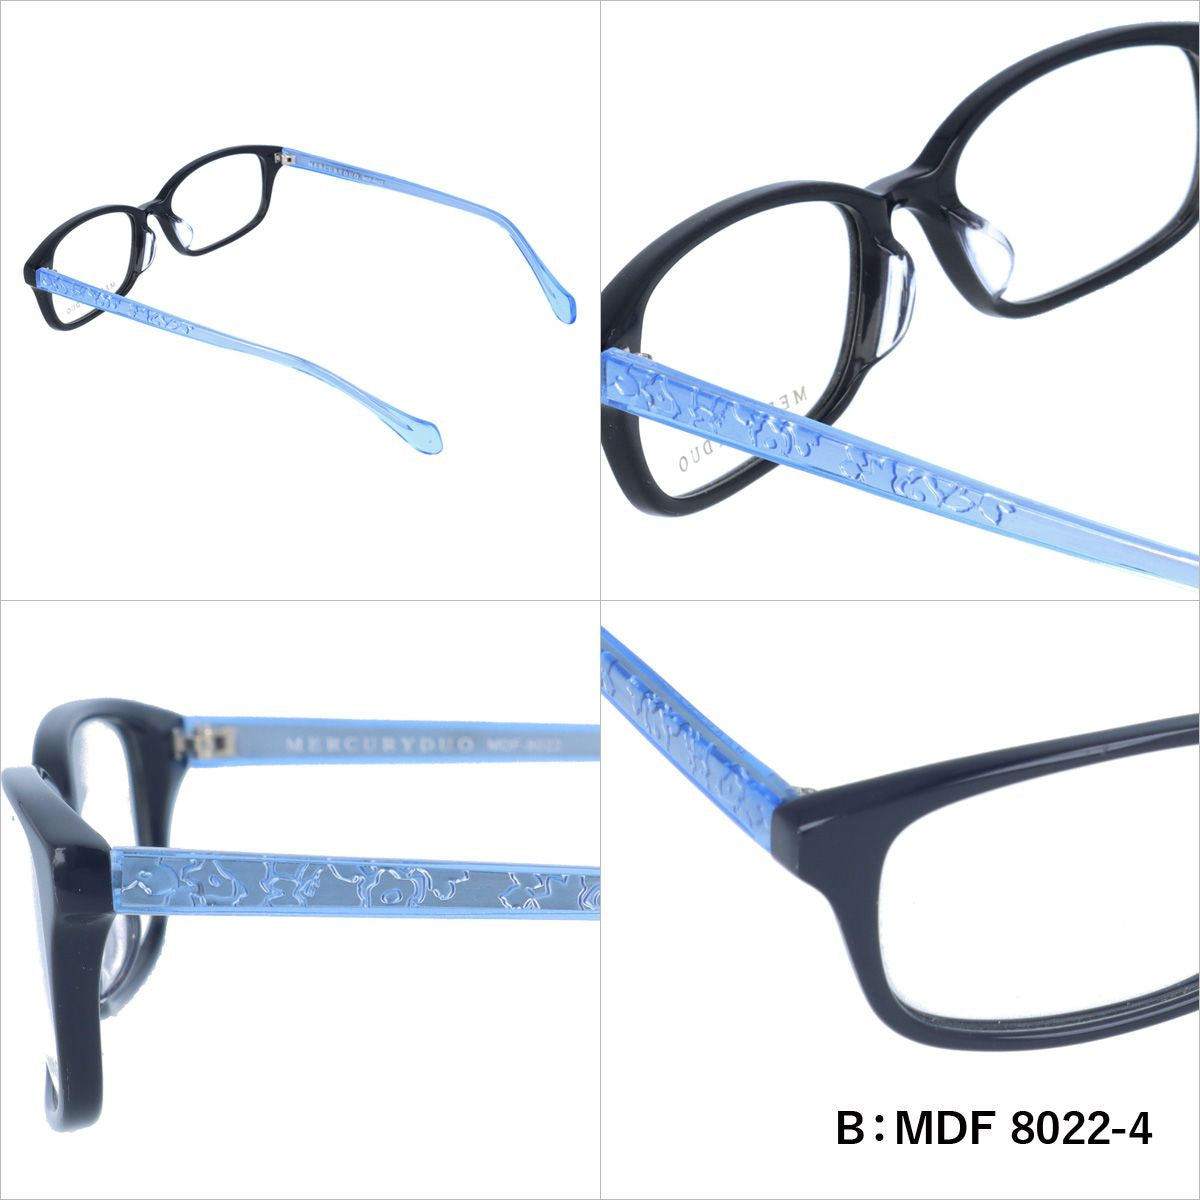 マーキュリーデュオ リーディンググラス フレーム レディース ブランド 度付き 度入り メガネ 眼鏡 アジアンフィット MERCURYDUO MDF 8006-3 / MDF 8022-4 / MDF 8019-4 レディース 女性 プレゼント